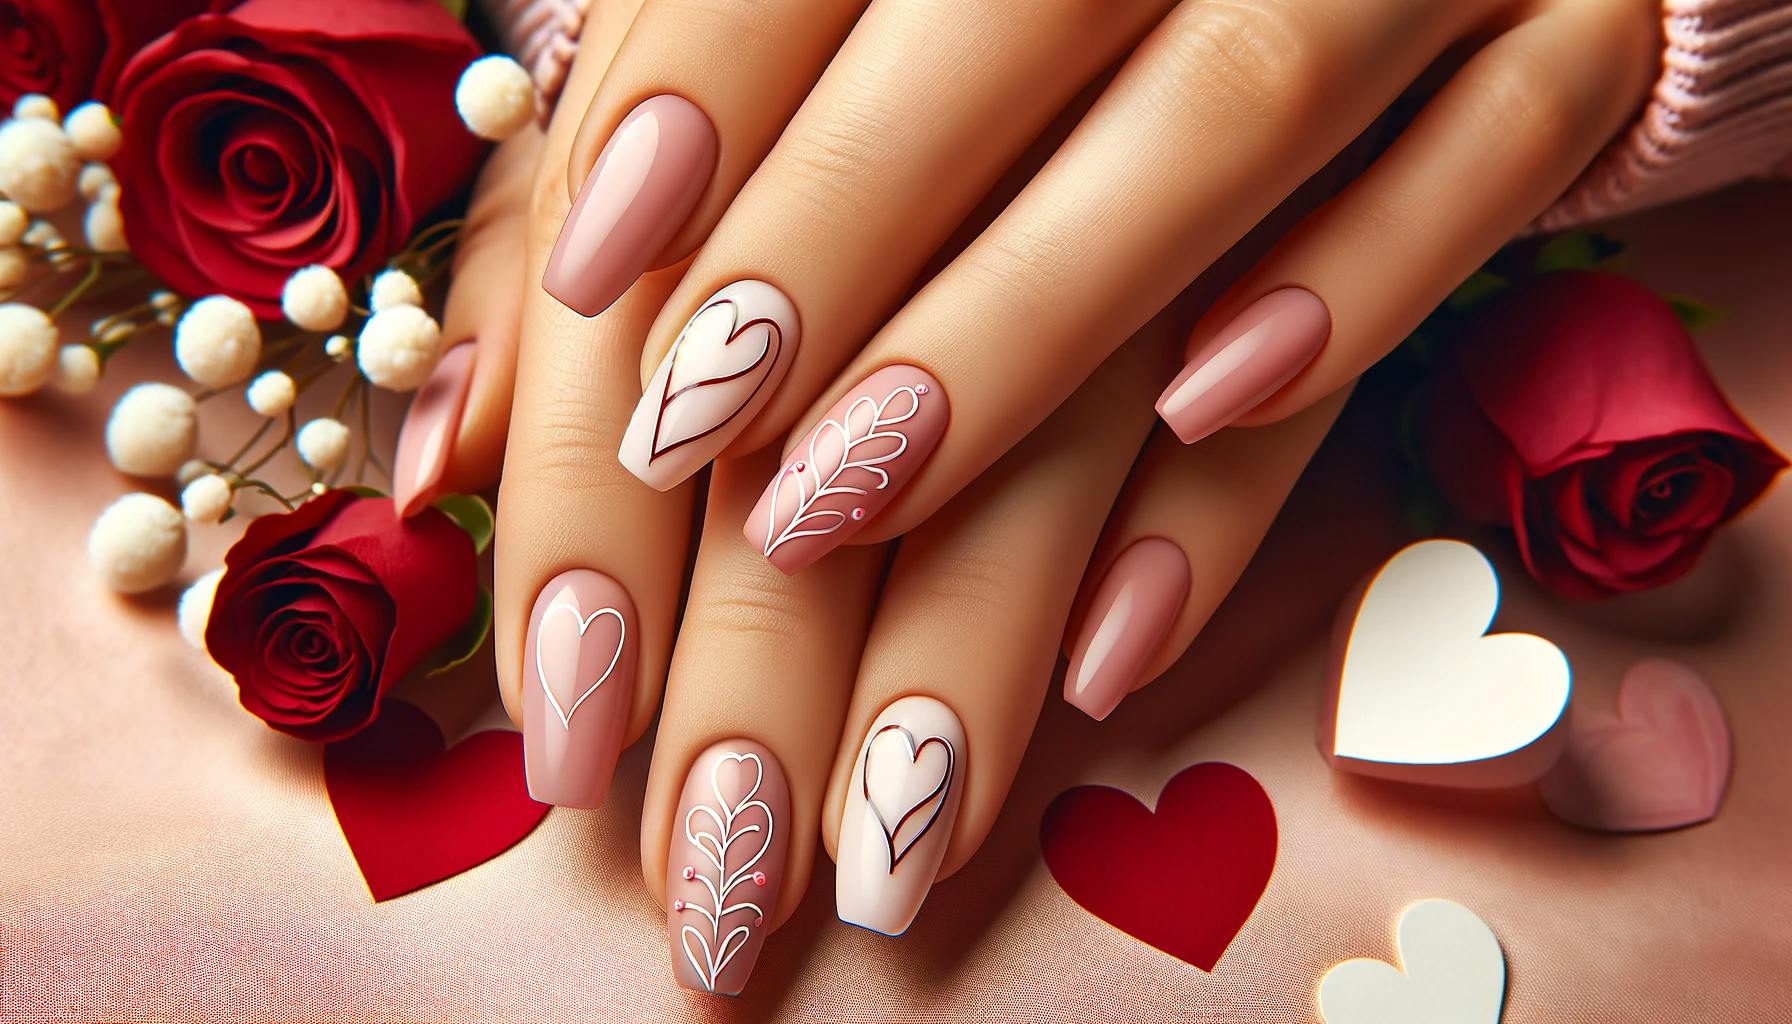 Walentynkowy manicure z minimalistycznymi sercami na pastelowych paznokciach, akcentujacy delikatność i milosc